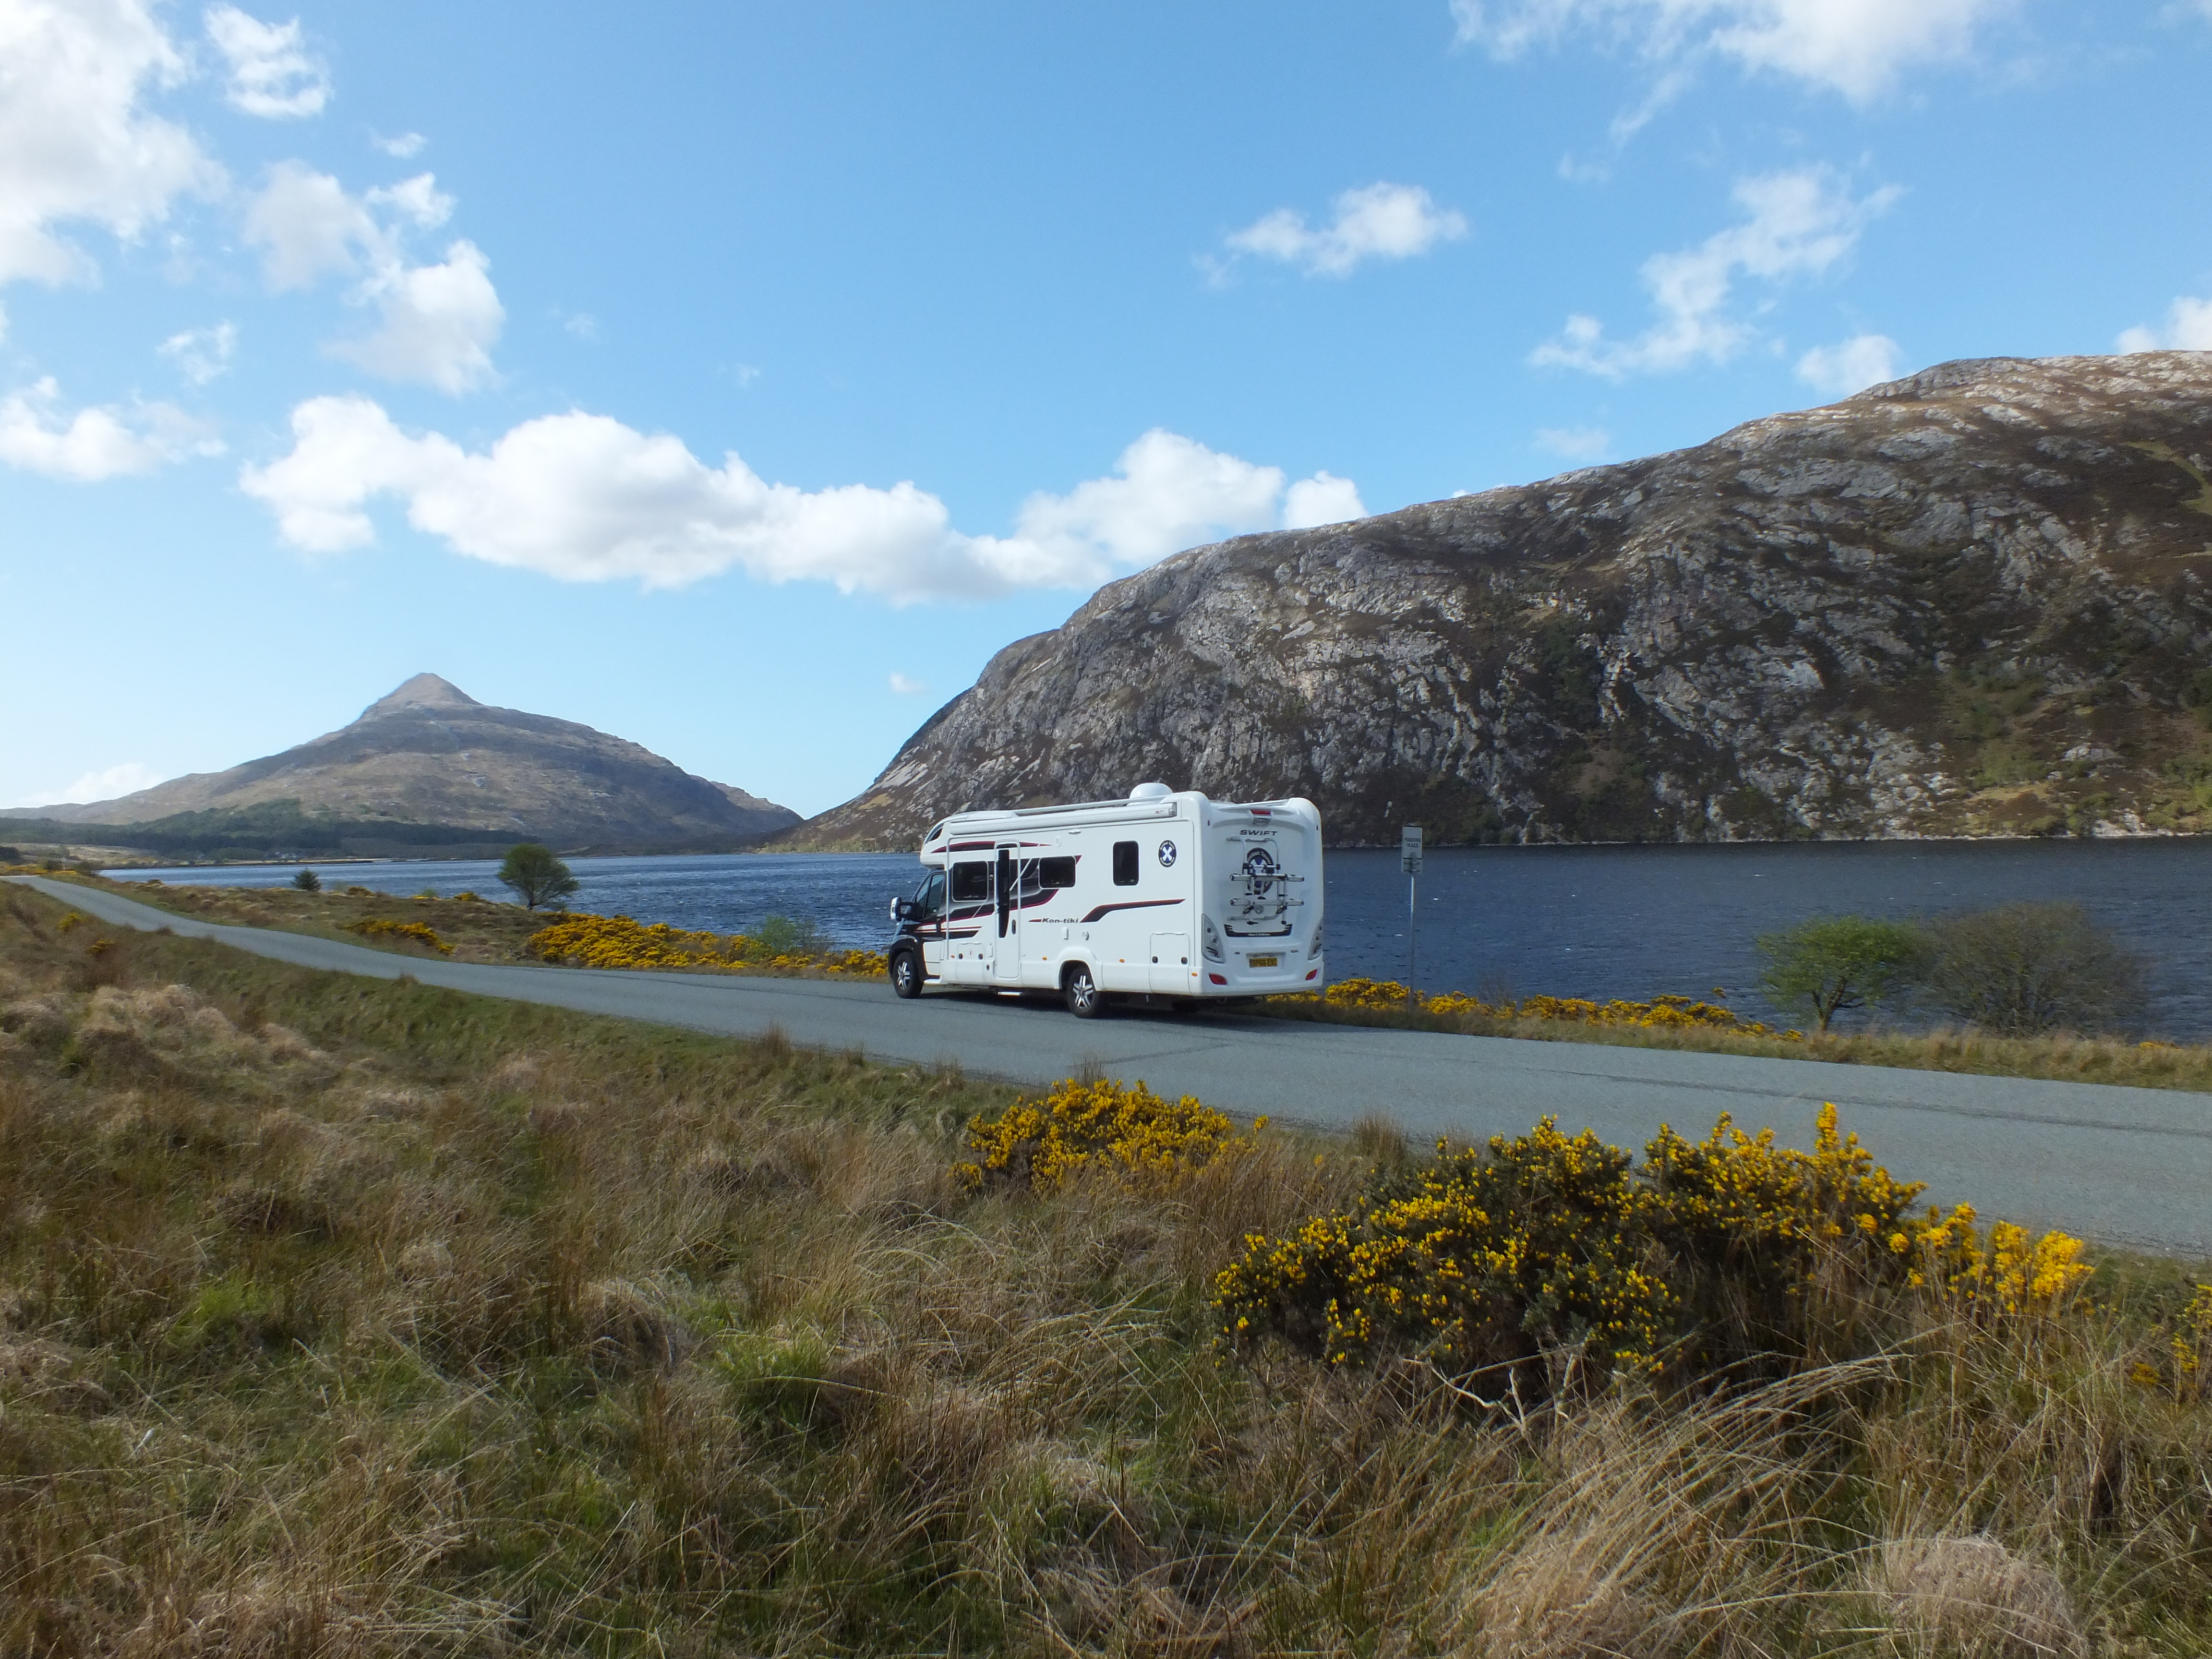 Scottish tourer motorhome enjoying the view